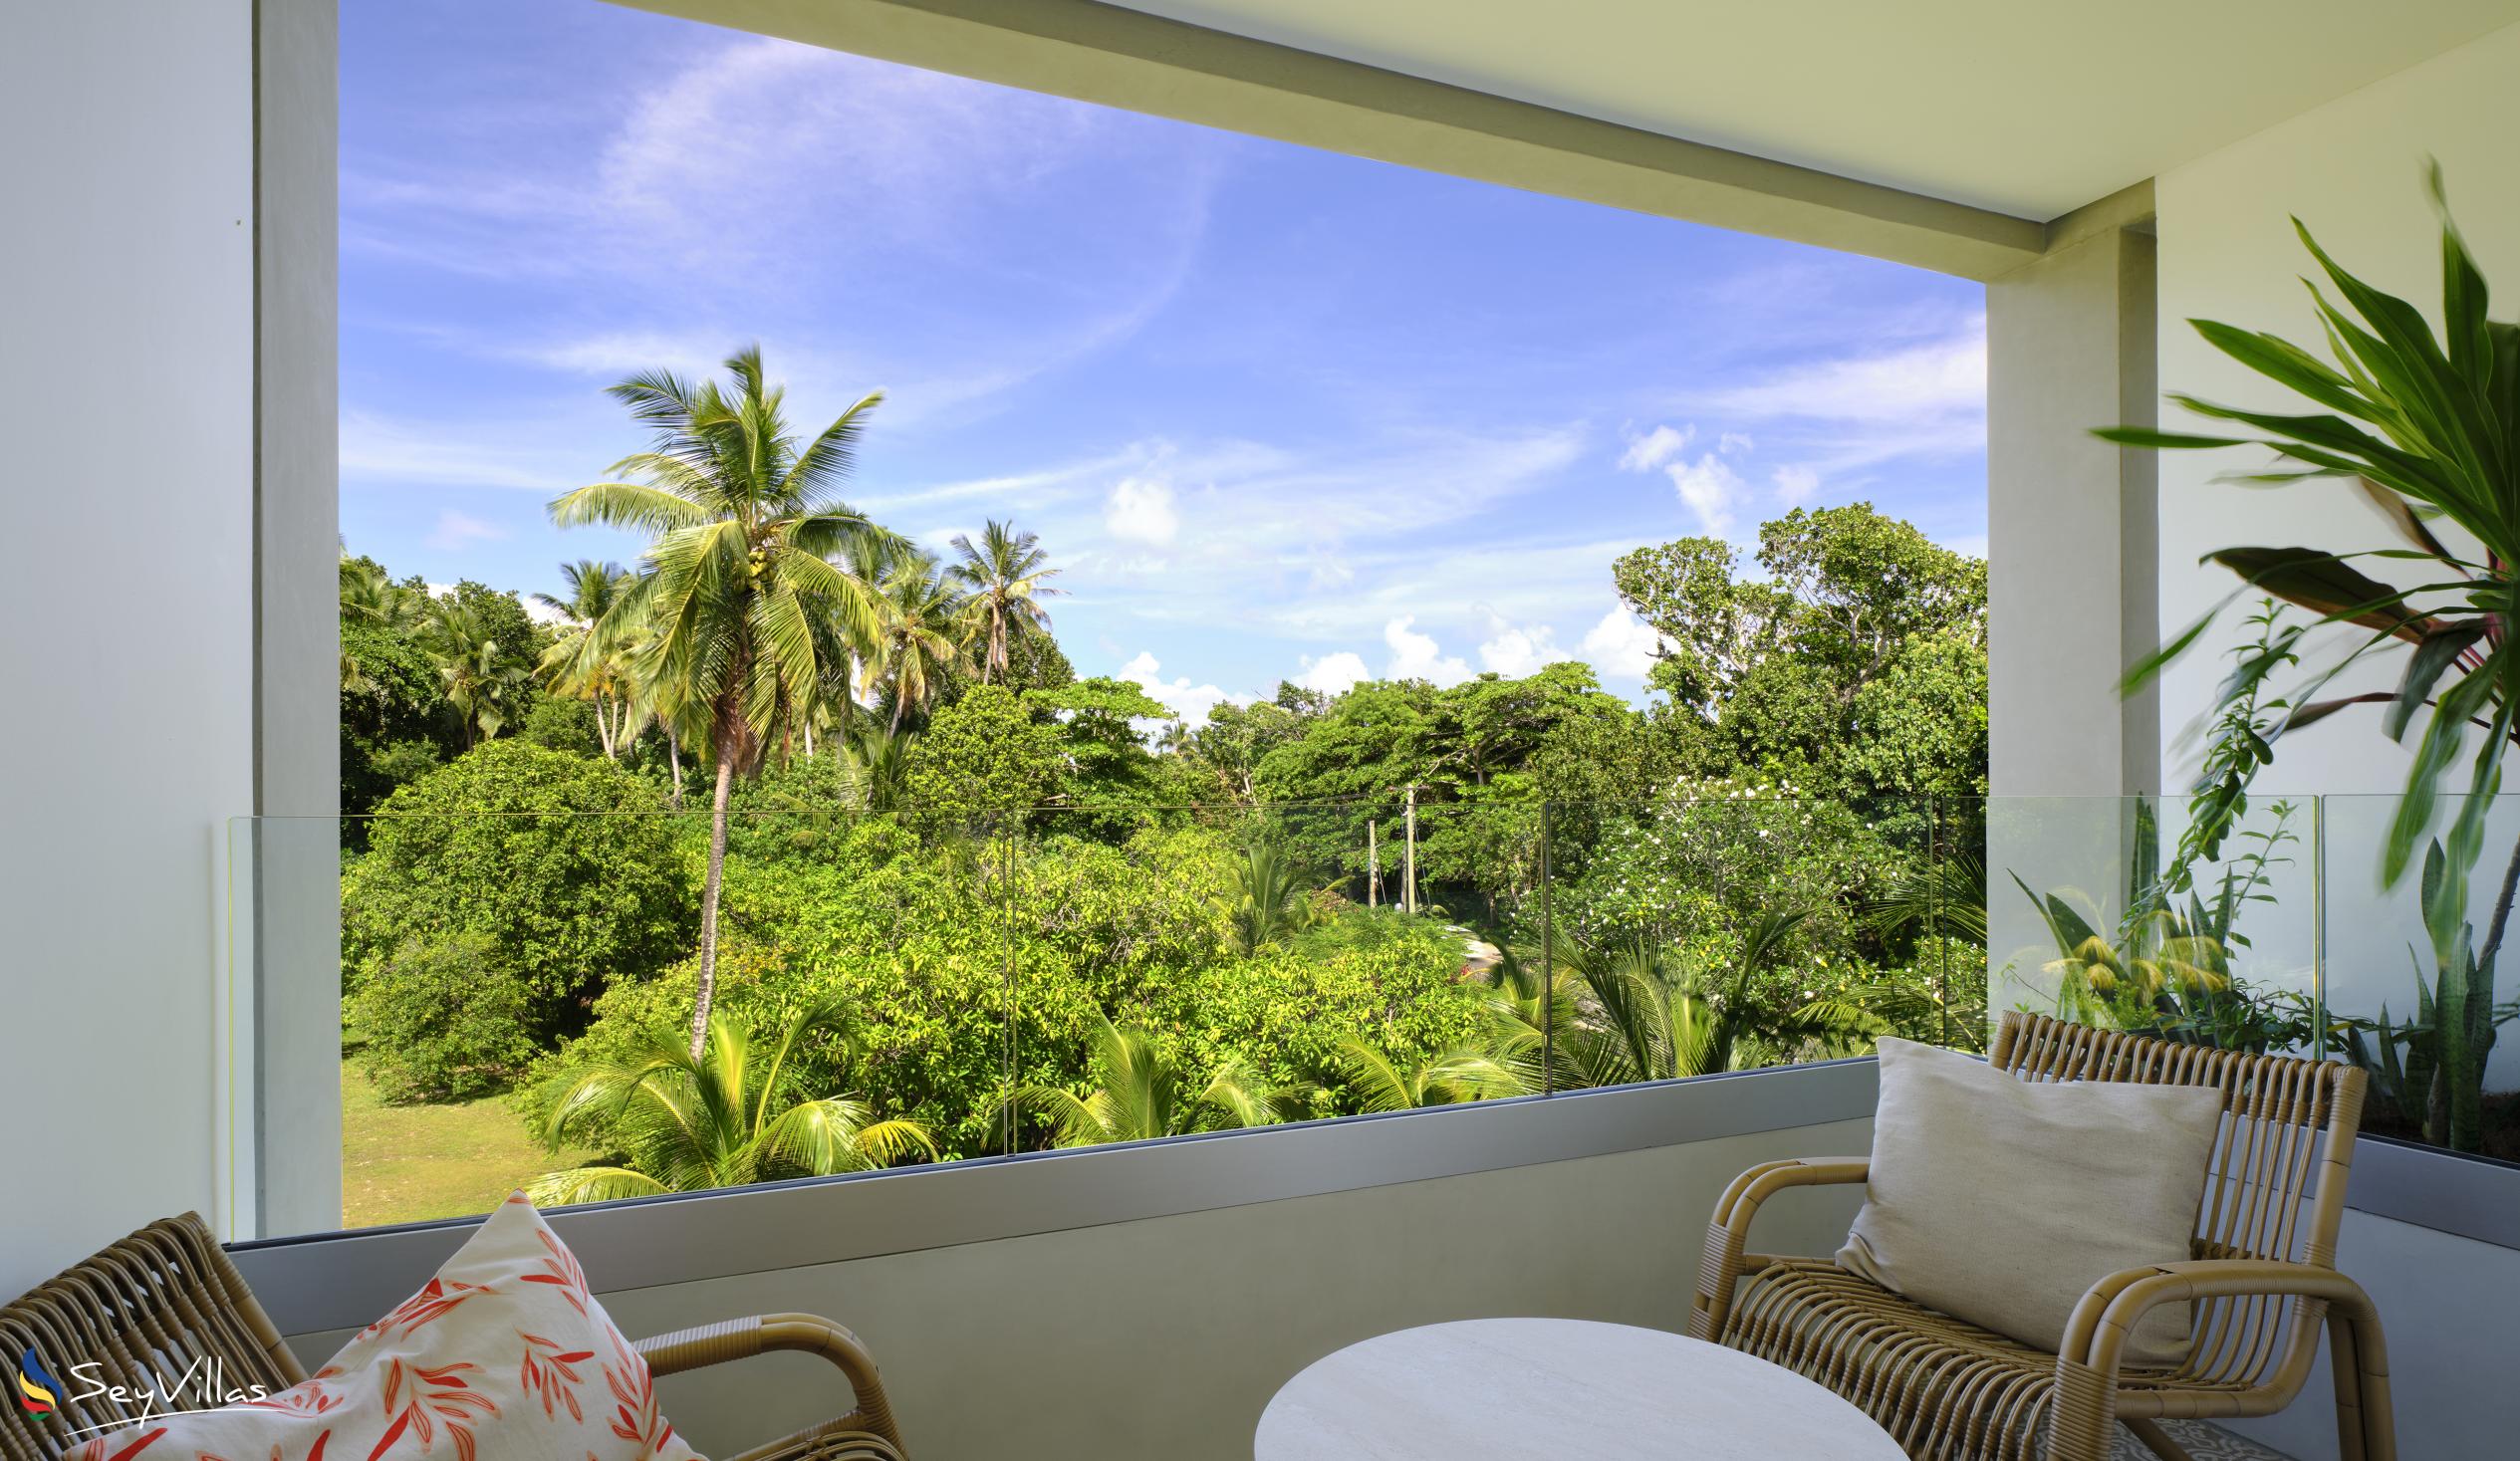 Foto 43: laila Resort - Chambre Deluxe Vue Motagne - Mahé (Seychelles)